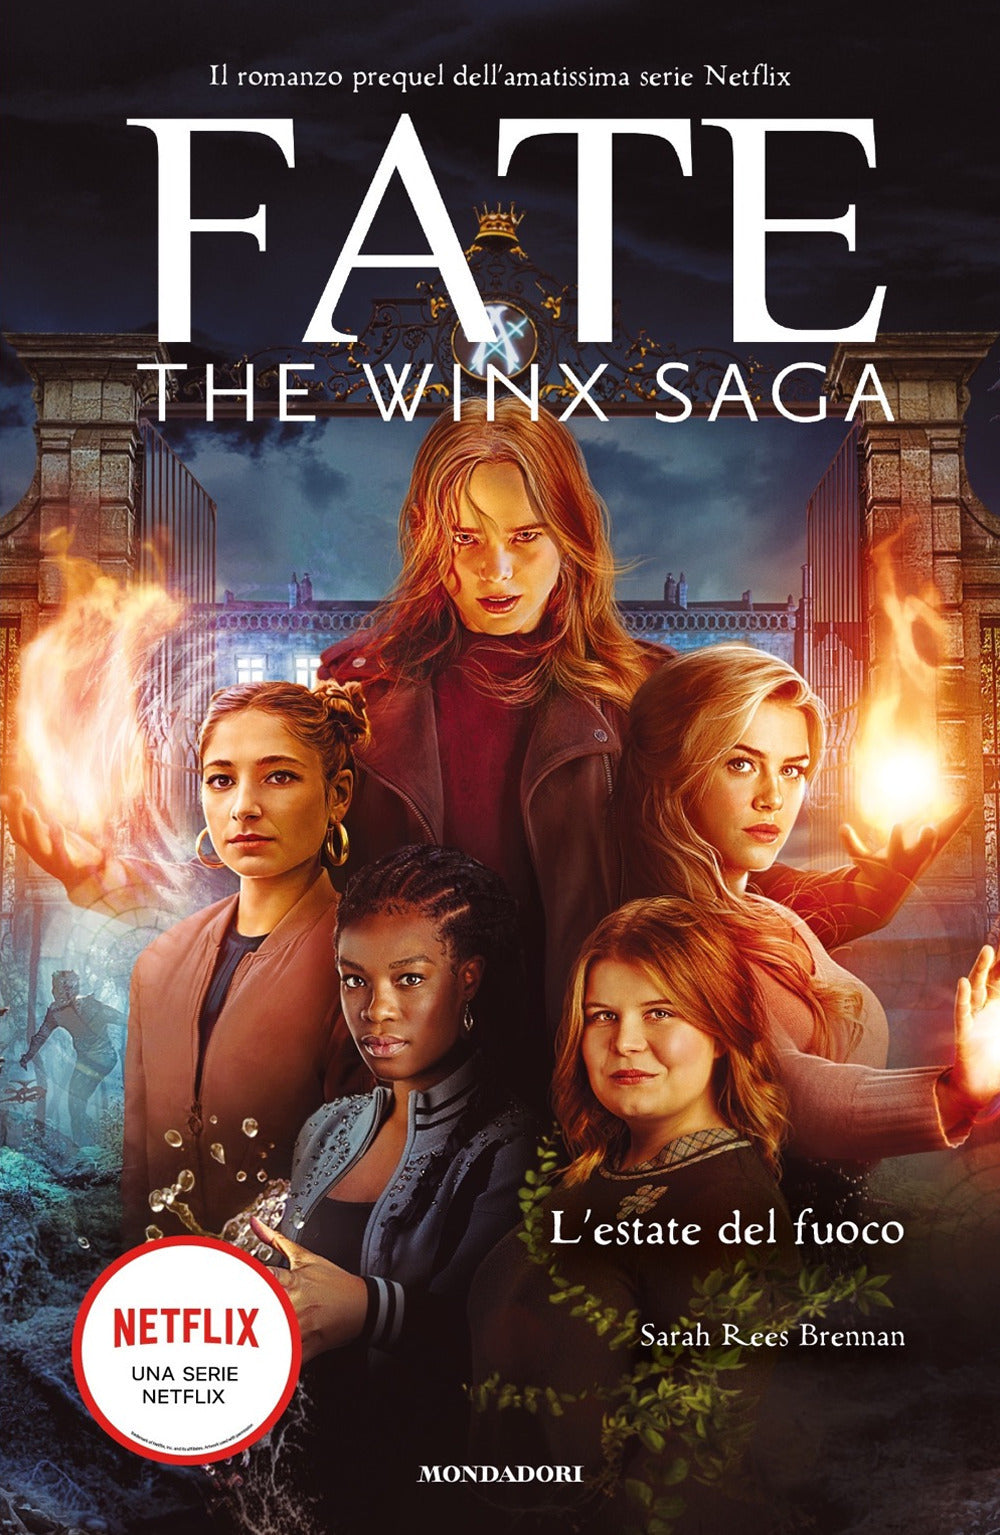 L'estate del fuoco. Fate. The Winx saga.